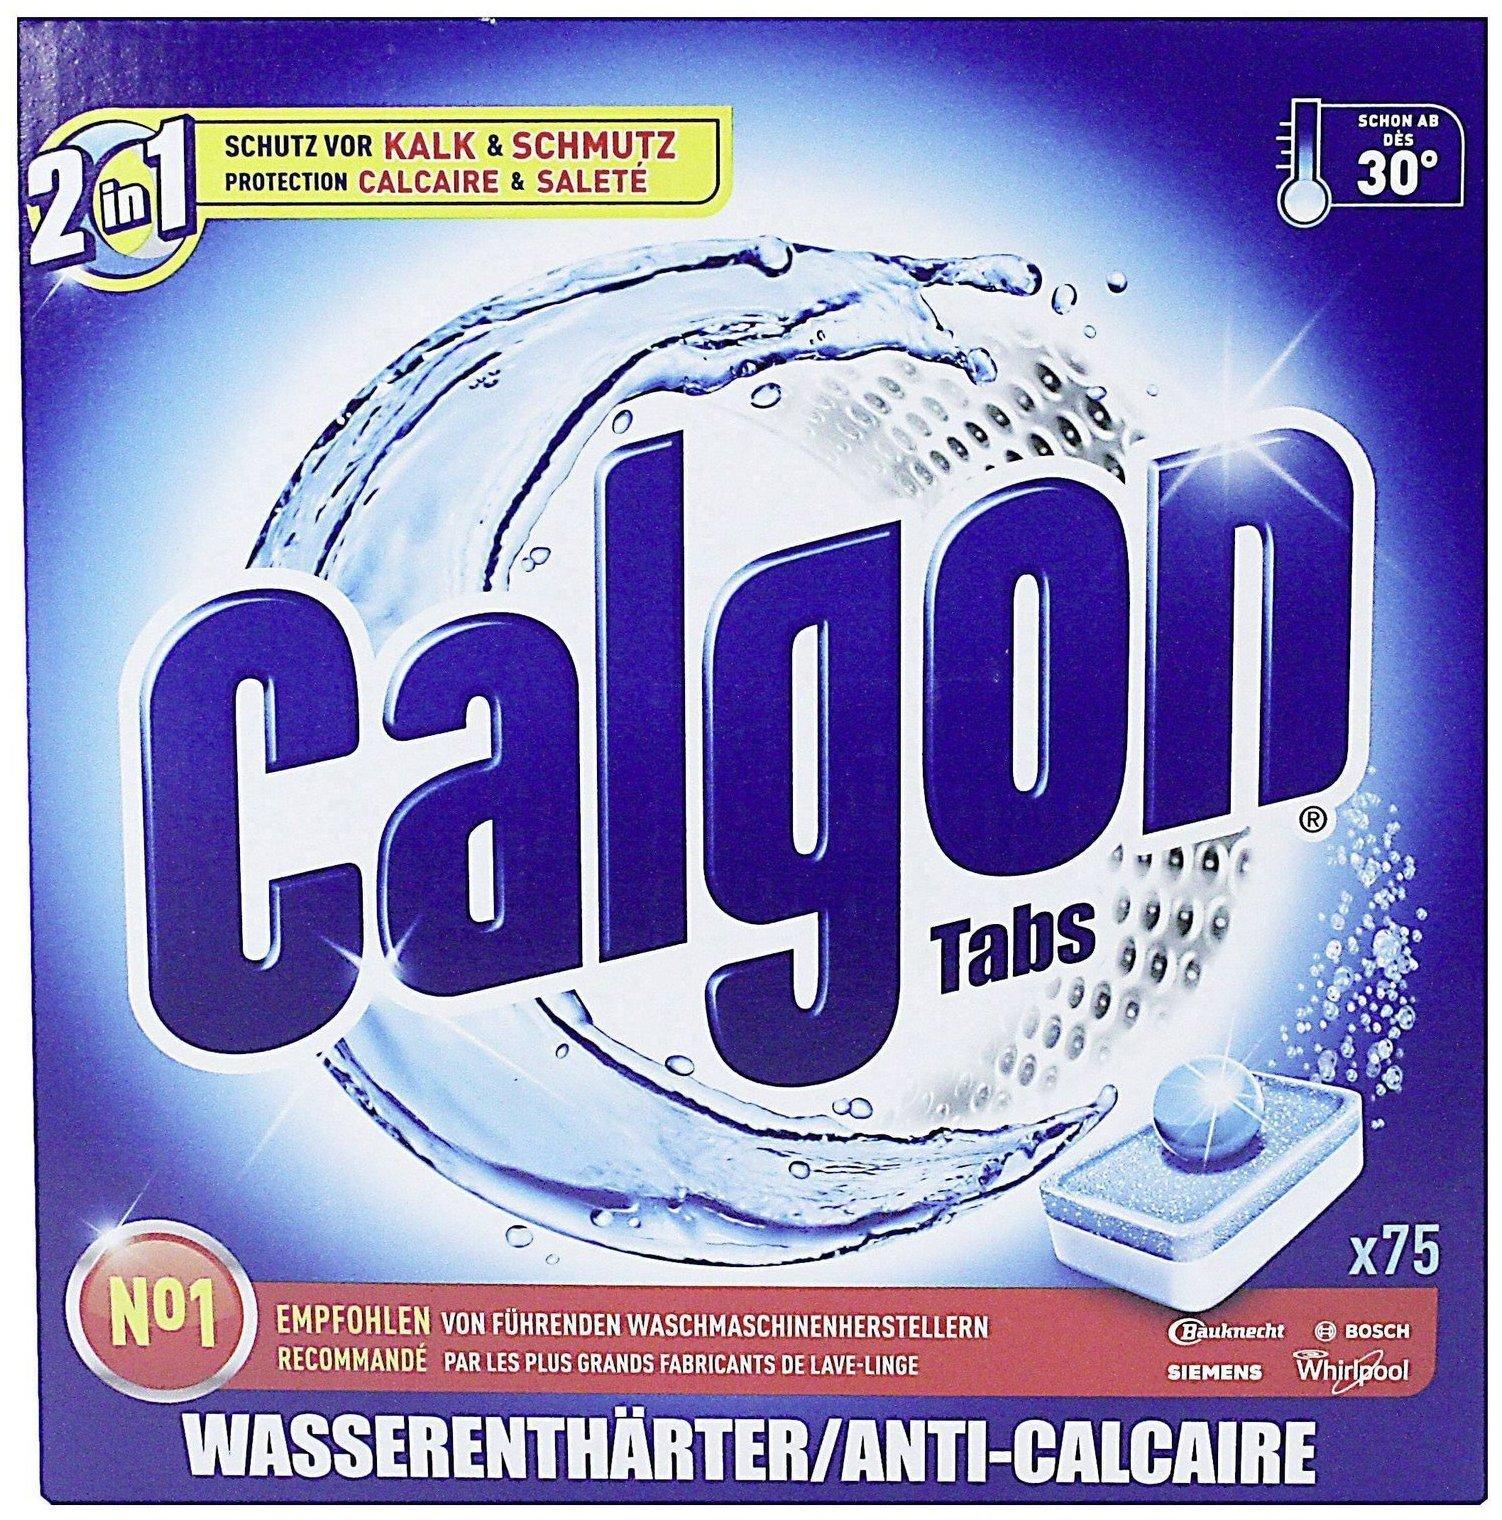 Ist Calgon wirklich gut für die Waschmaschine?